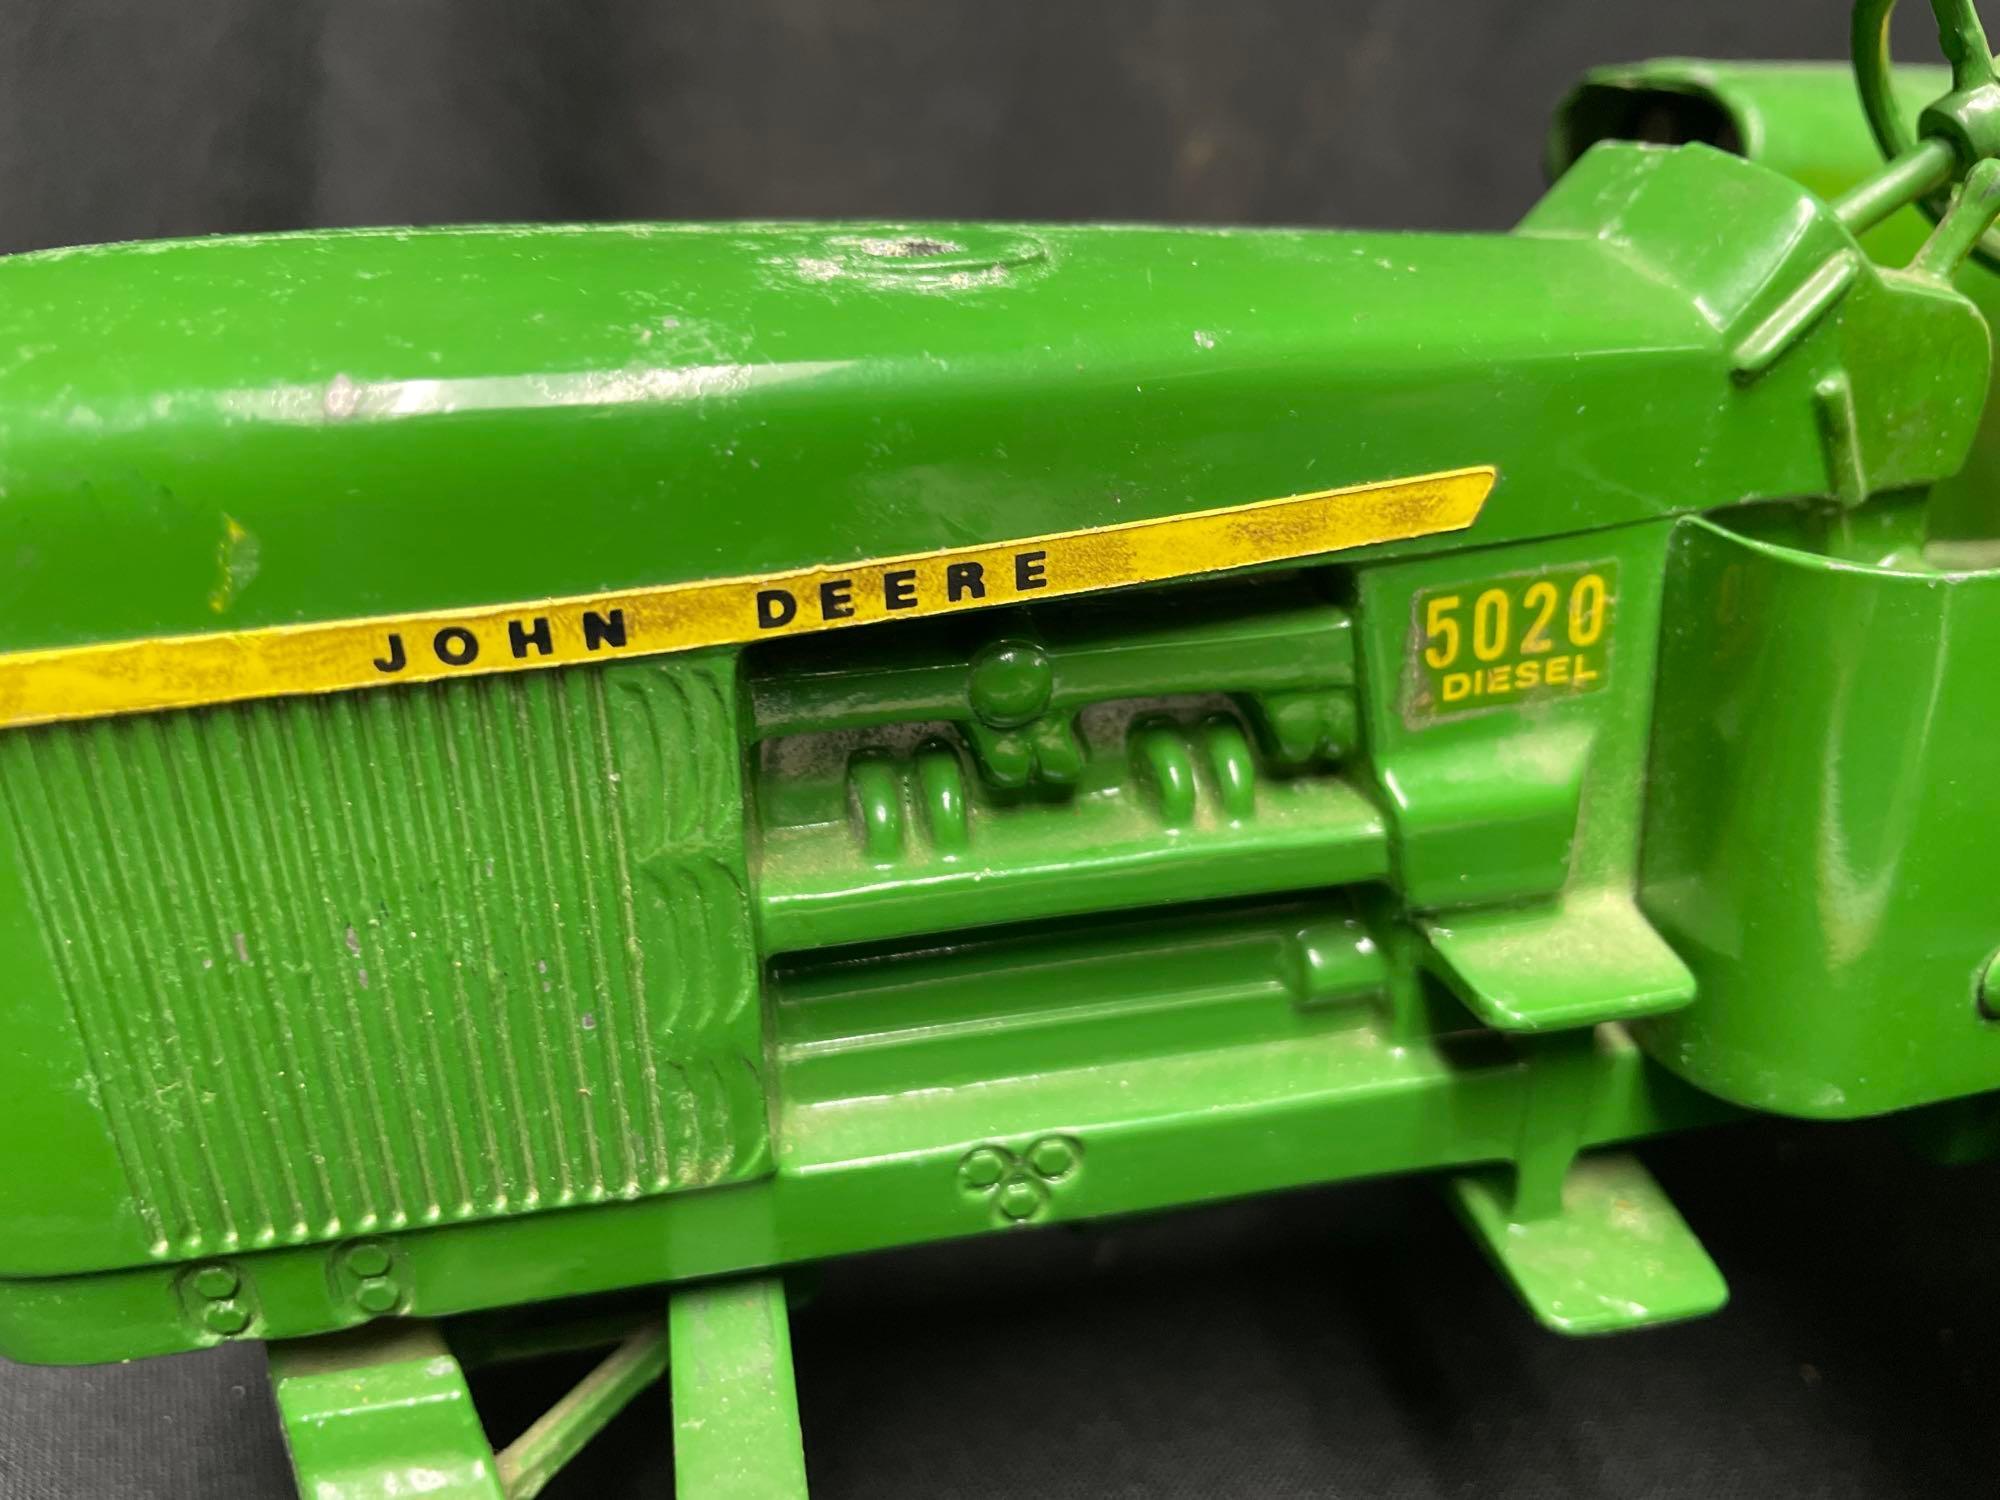 1/16th Scale Ertl John Deere 5020 Diesel Tractor